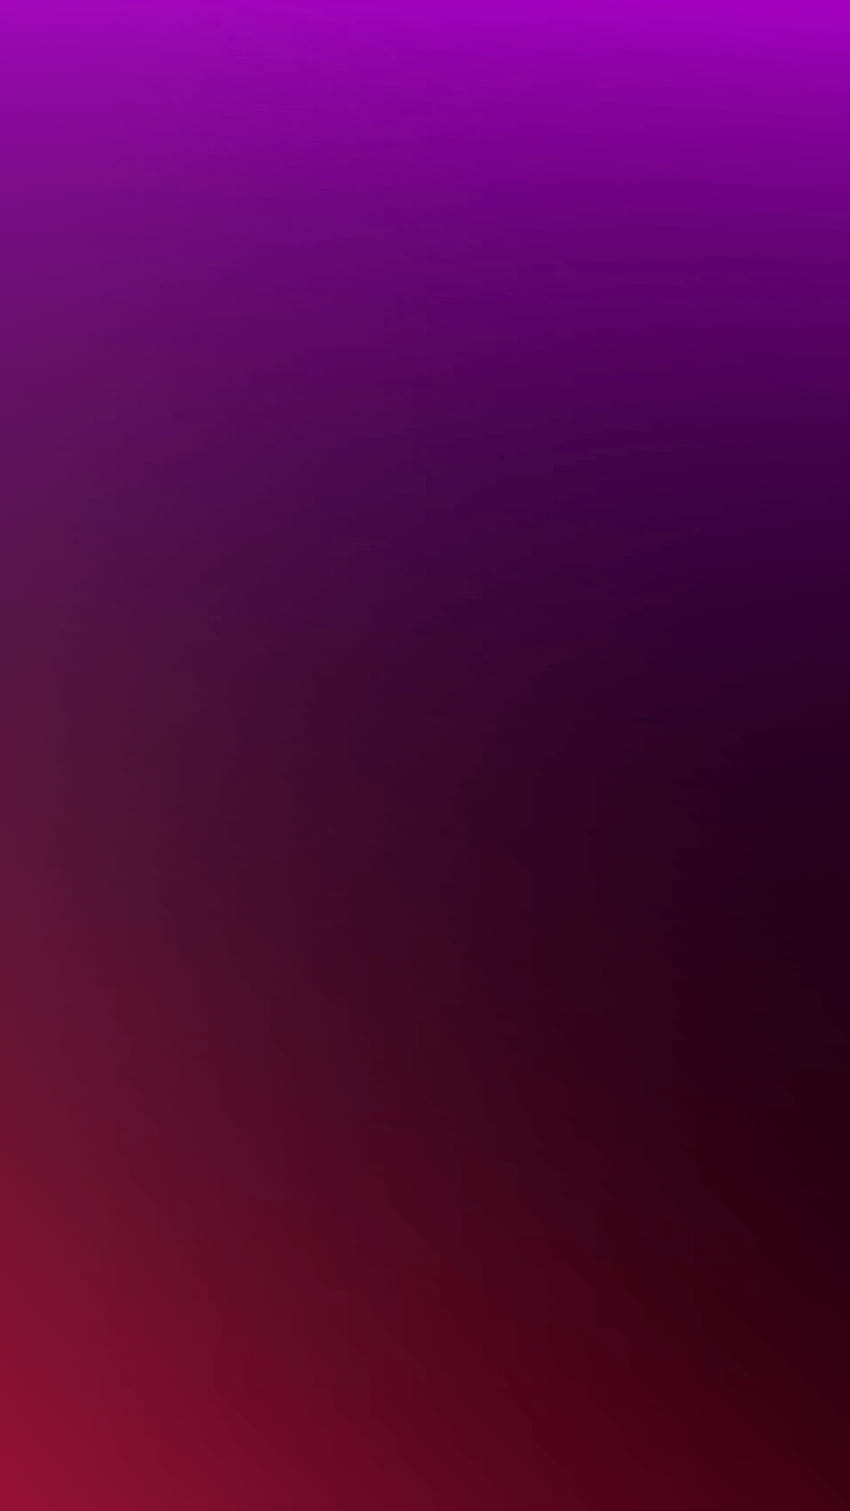 1080x1920 Gradiente violeta para iPhone 8, iPhone 7, degradado rojo magenta fondo de pantalla del teléfono